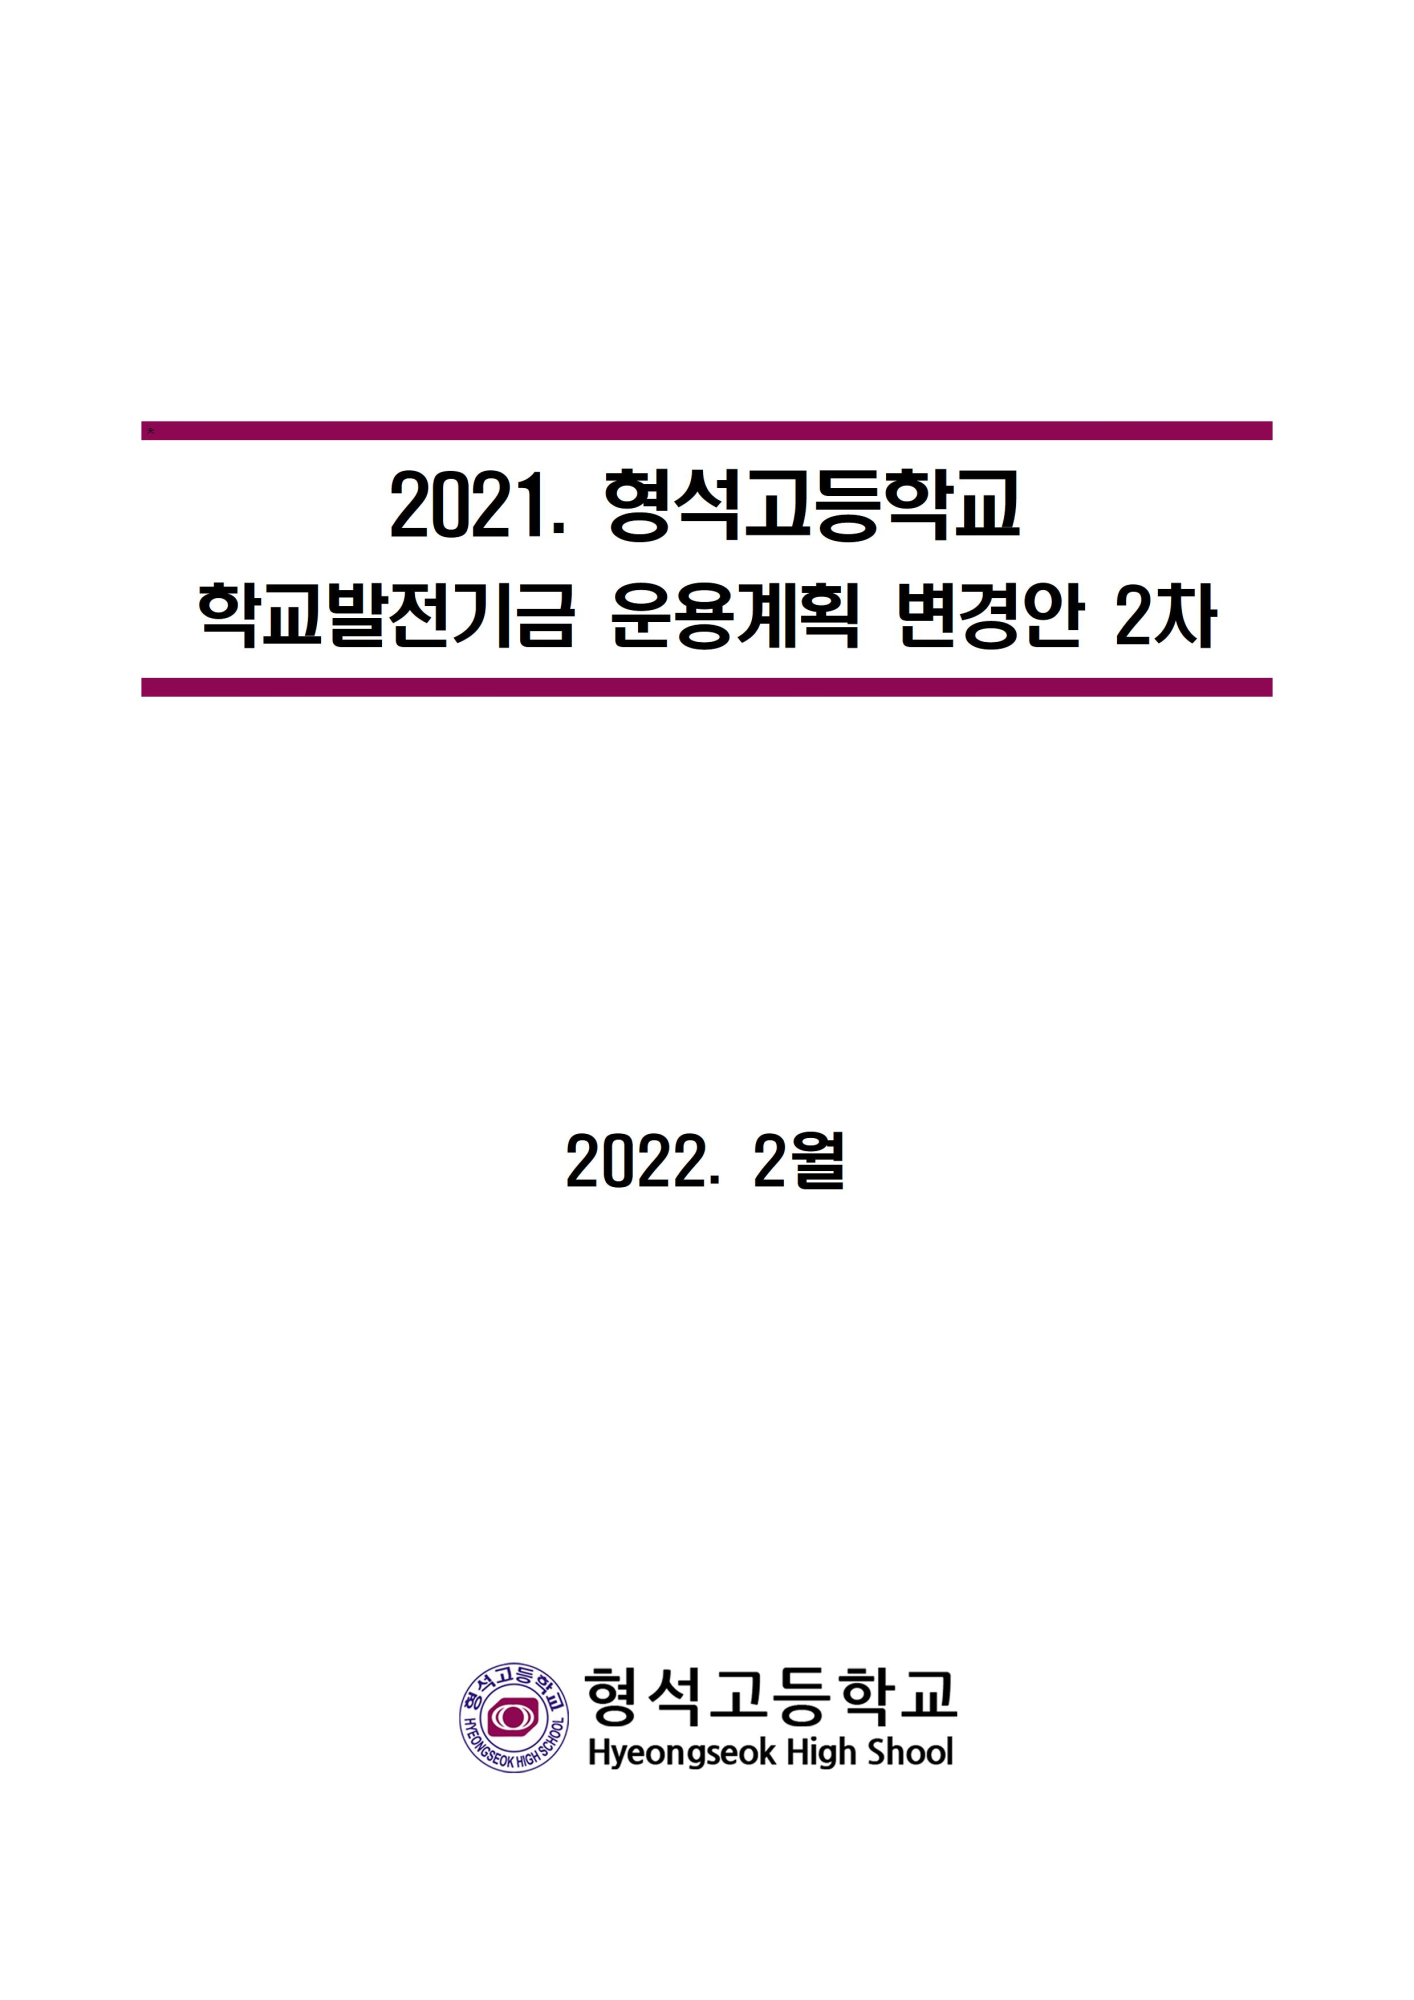 [형석고] 2021. 학교발전기금운용계획-2차 변경001